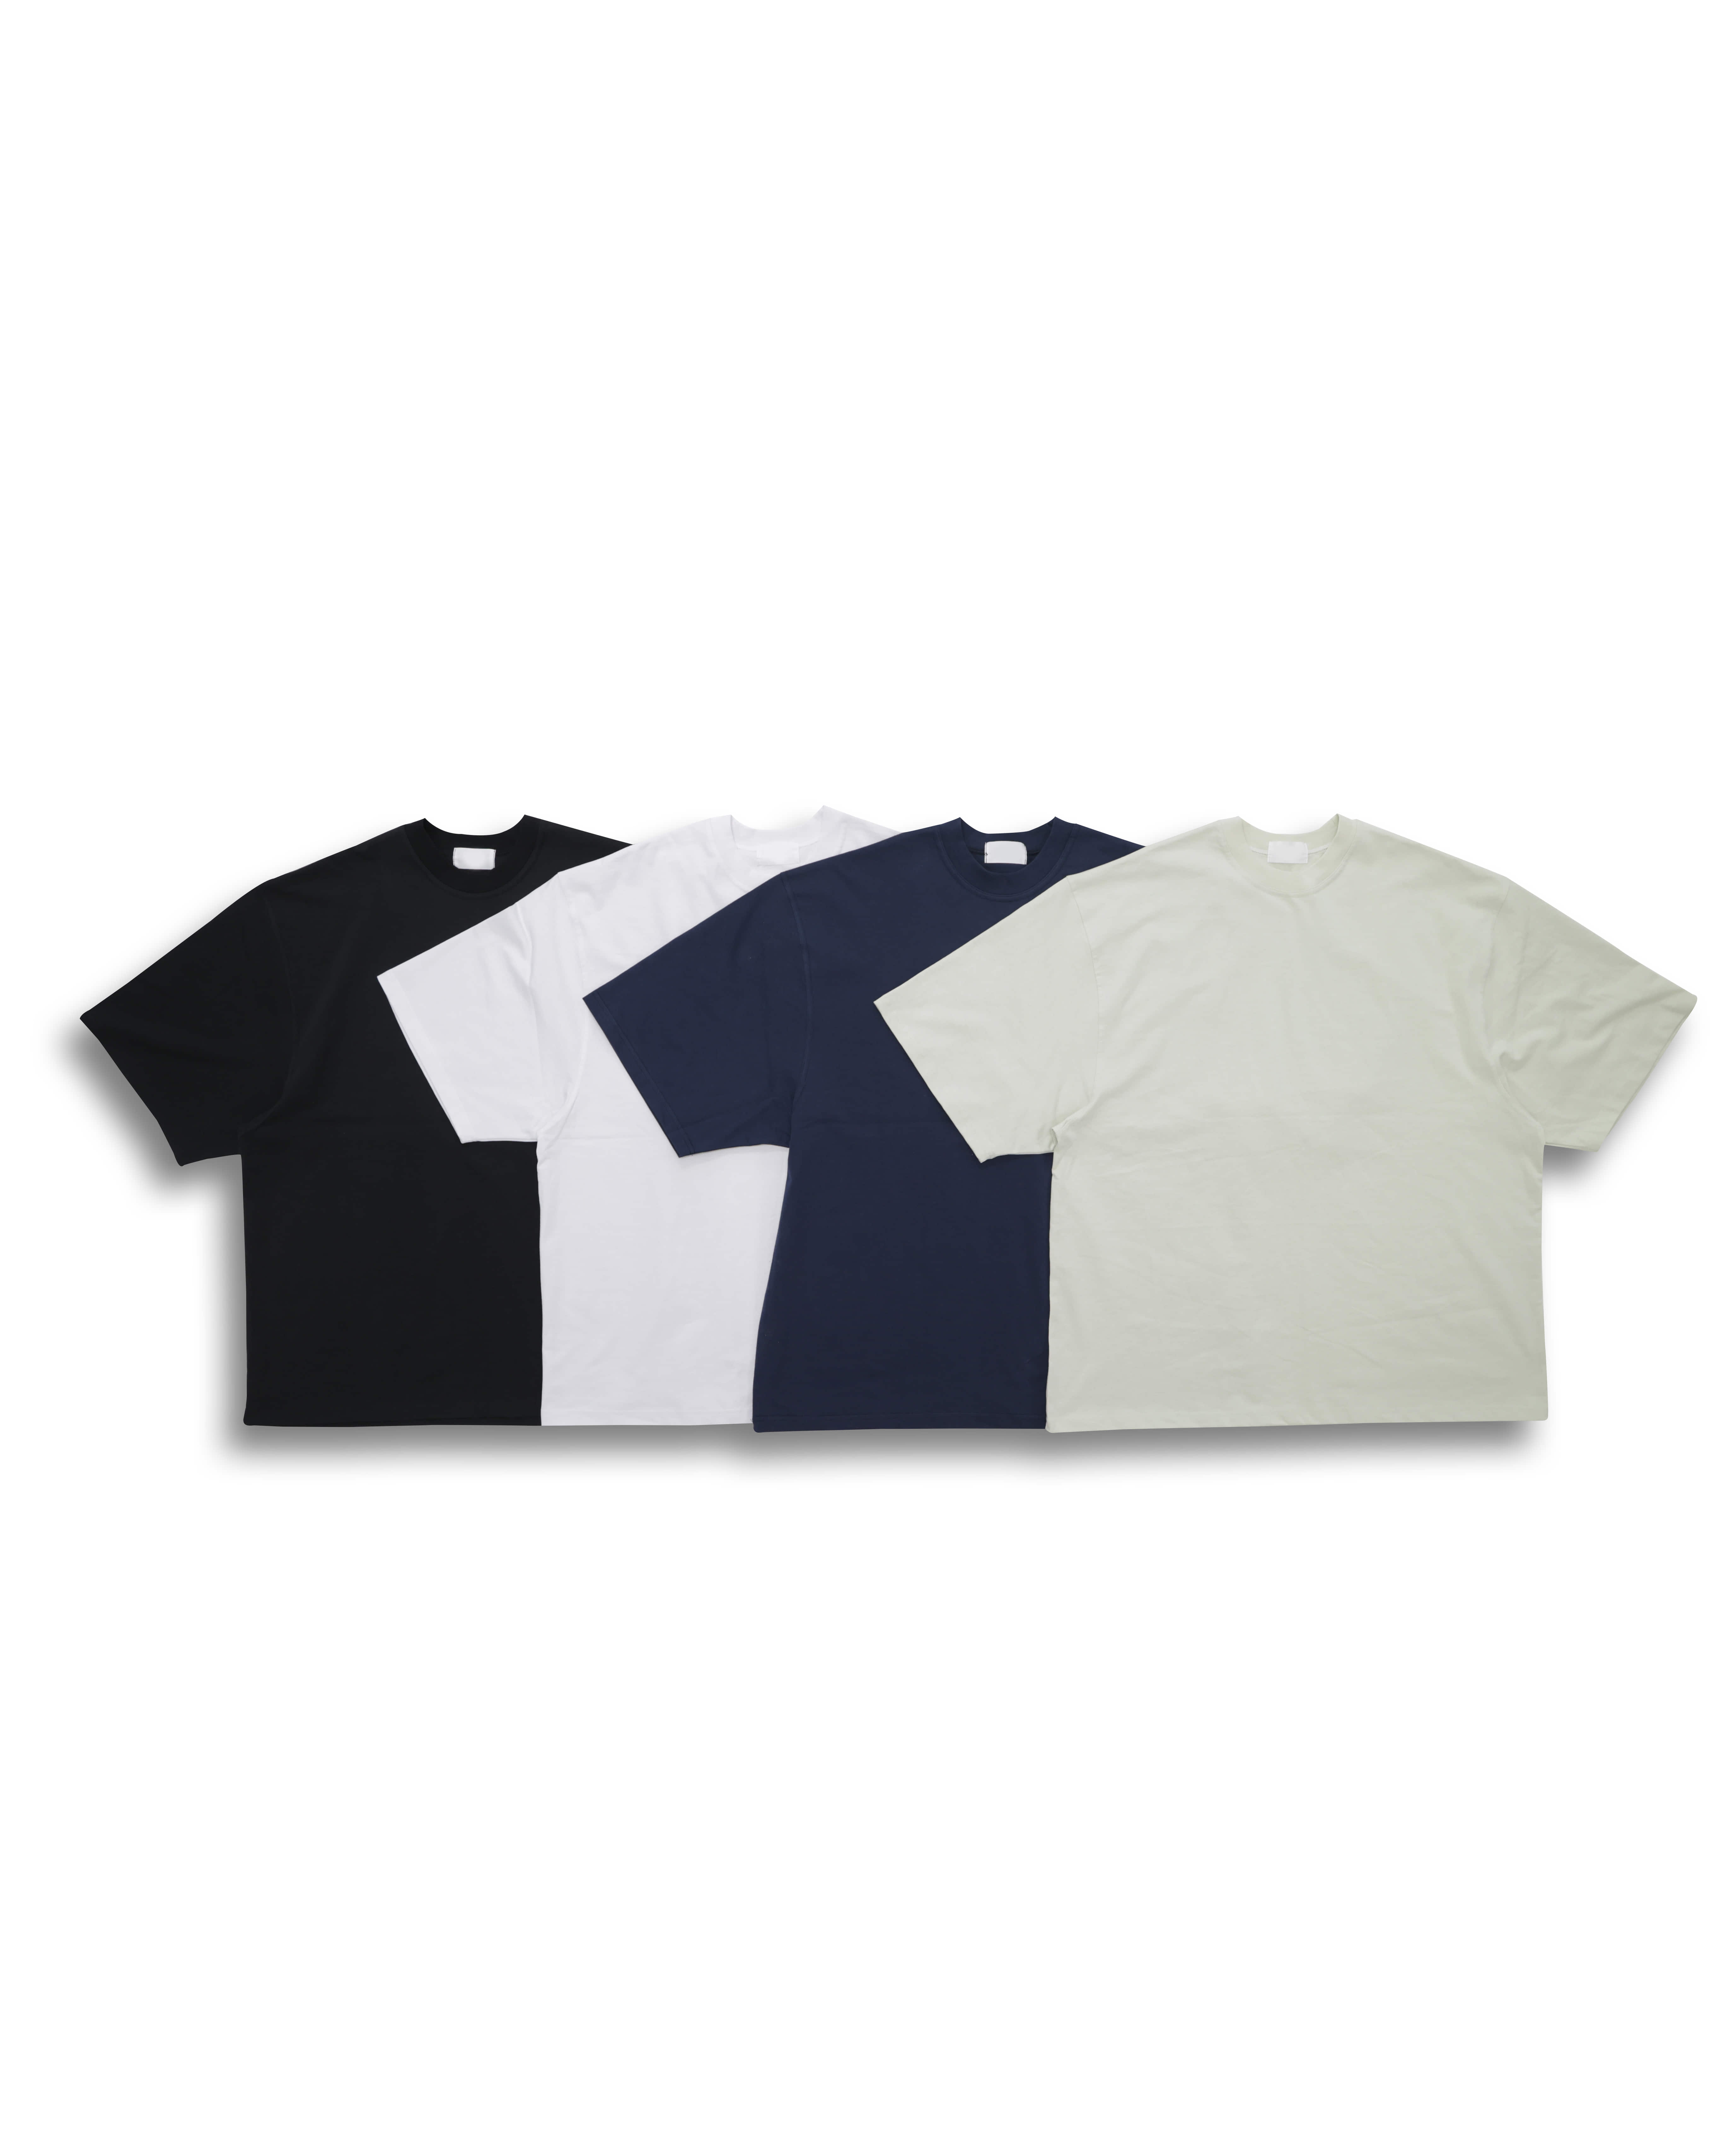 Maxi Oversized T-Shirts (Black/Gray/Greenary Gray /White)